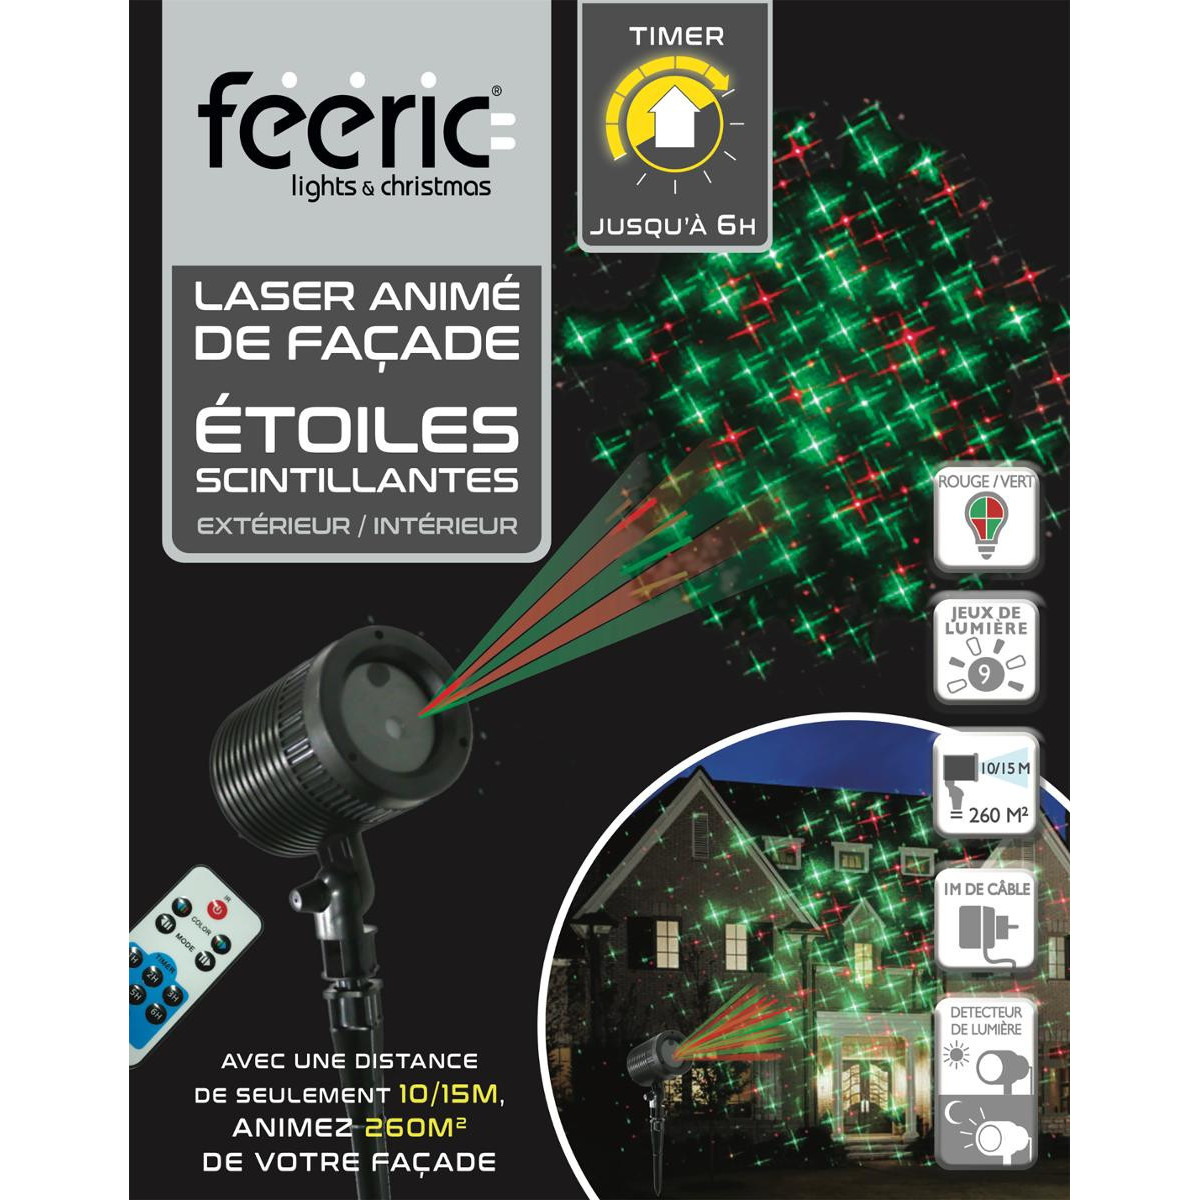 Projecteur Laser de façade Etoiles scintillantes 9 Jeux de lumière pour  Extérieur ou Intérieur - Lasers, projecteurs de noël - D